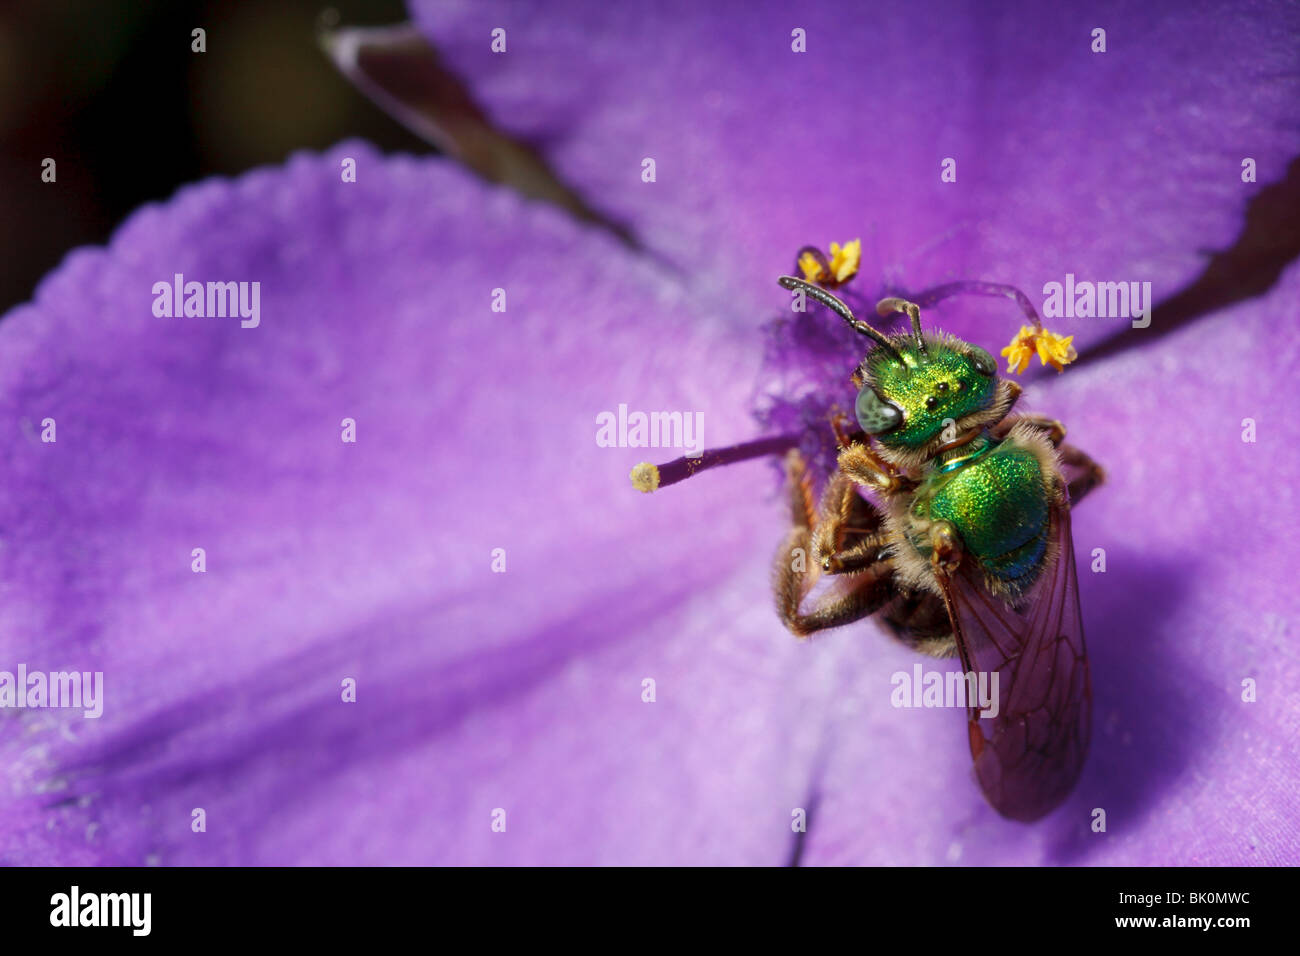 Eine grüne metallische Biene (Agapostemon) klammert sich an eine Dreimasterblume Blume. Stockfoto